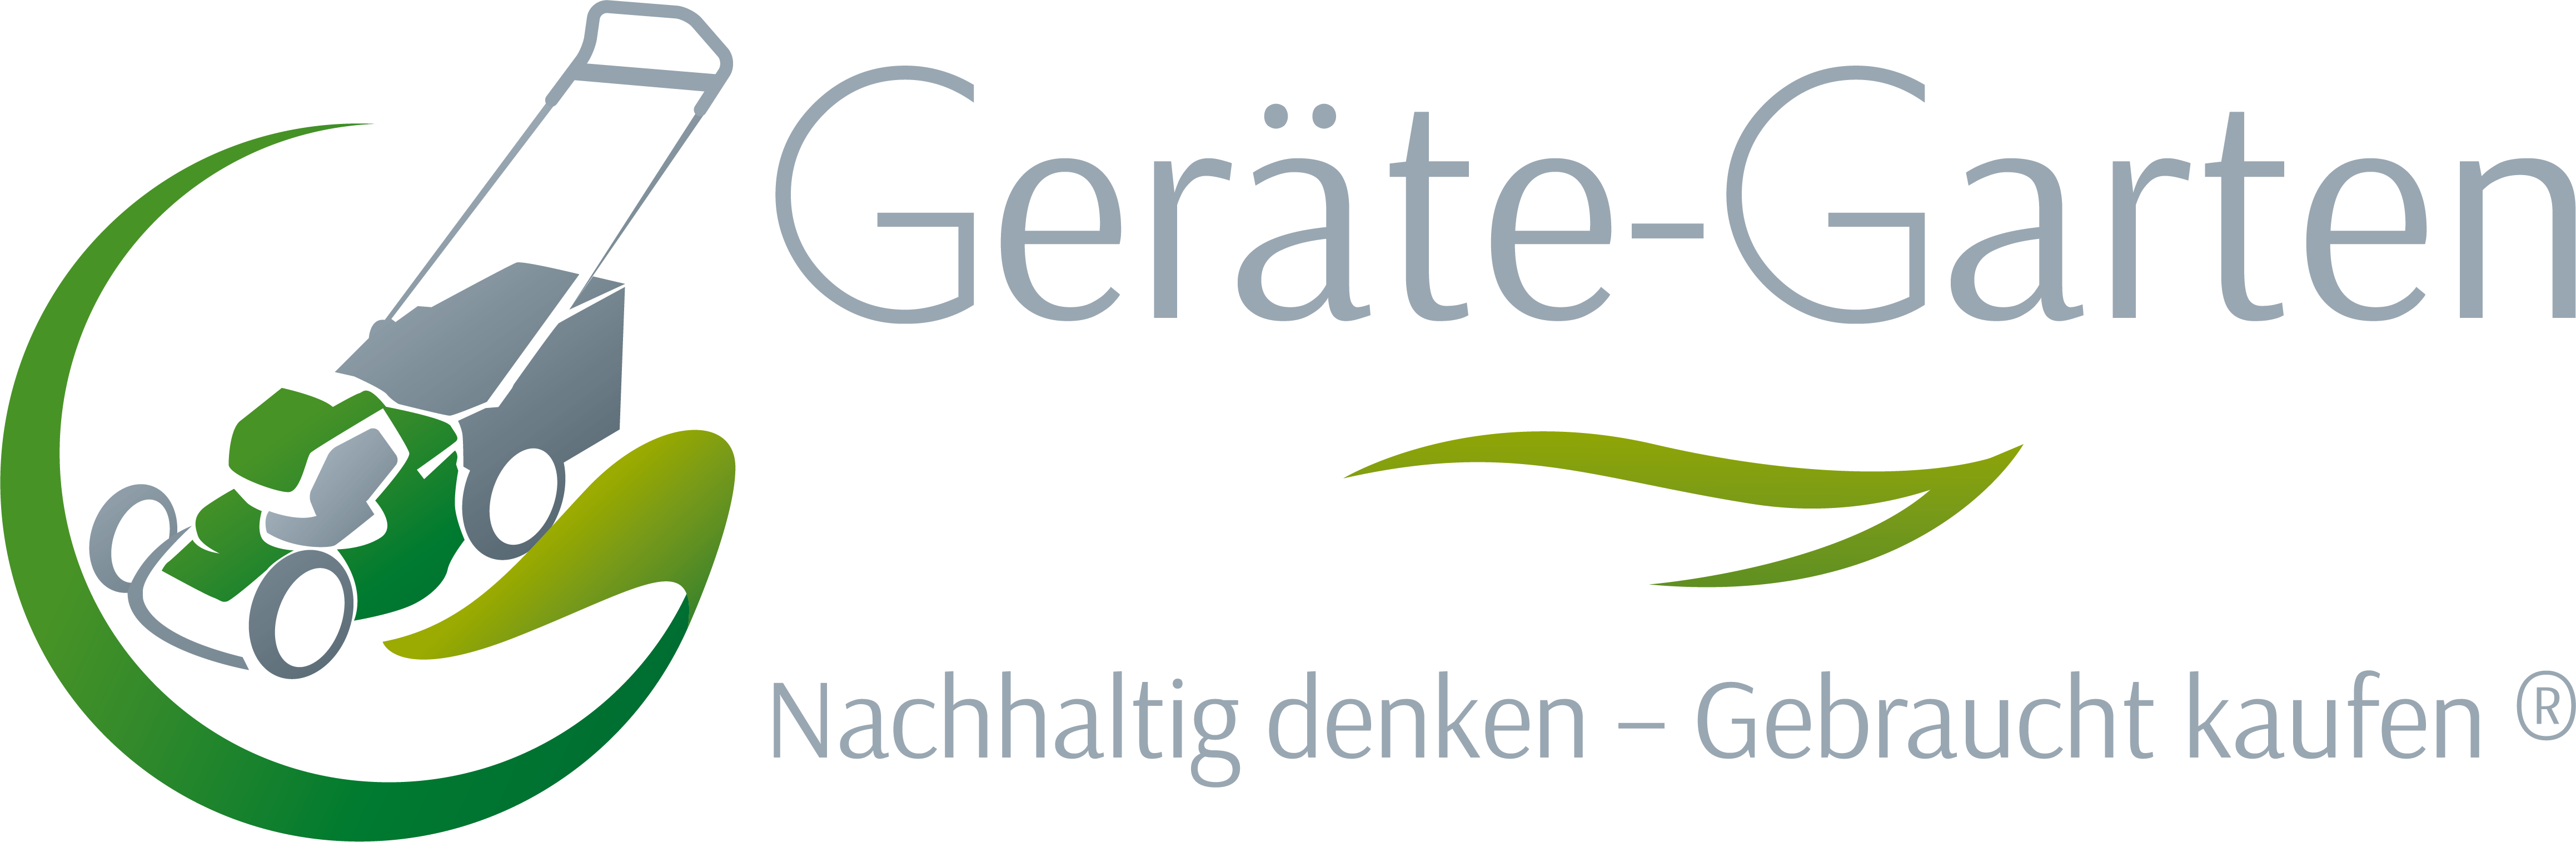 geräte-garten_logo_R